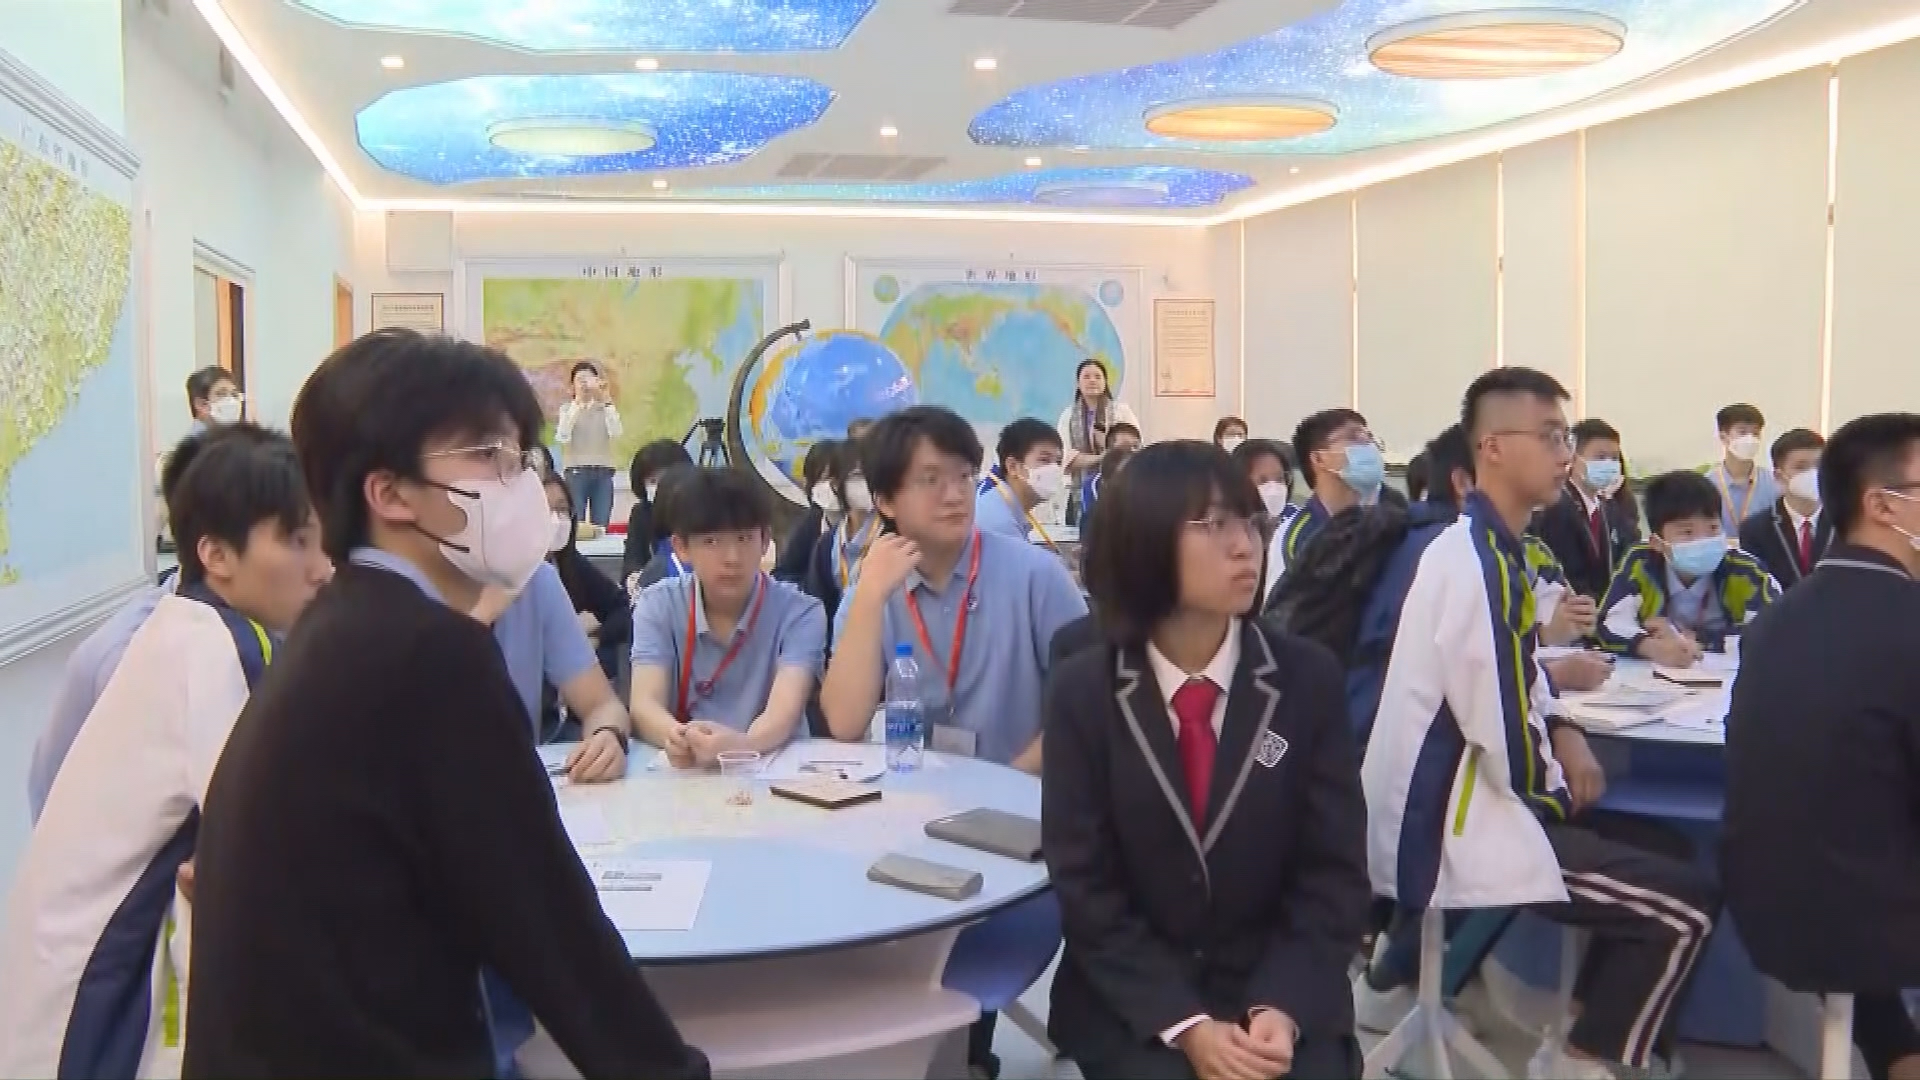 香港高中生内地考察 充实国民教育内涵